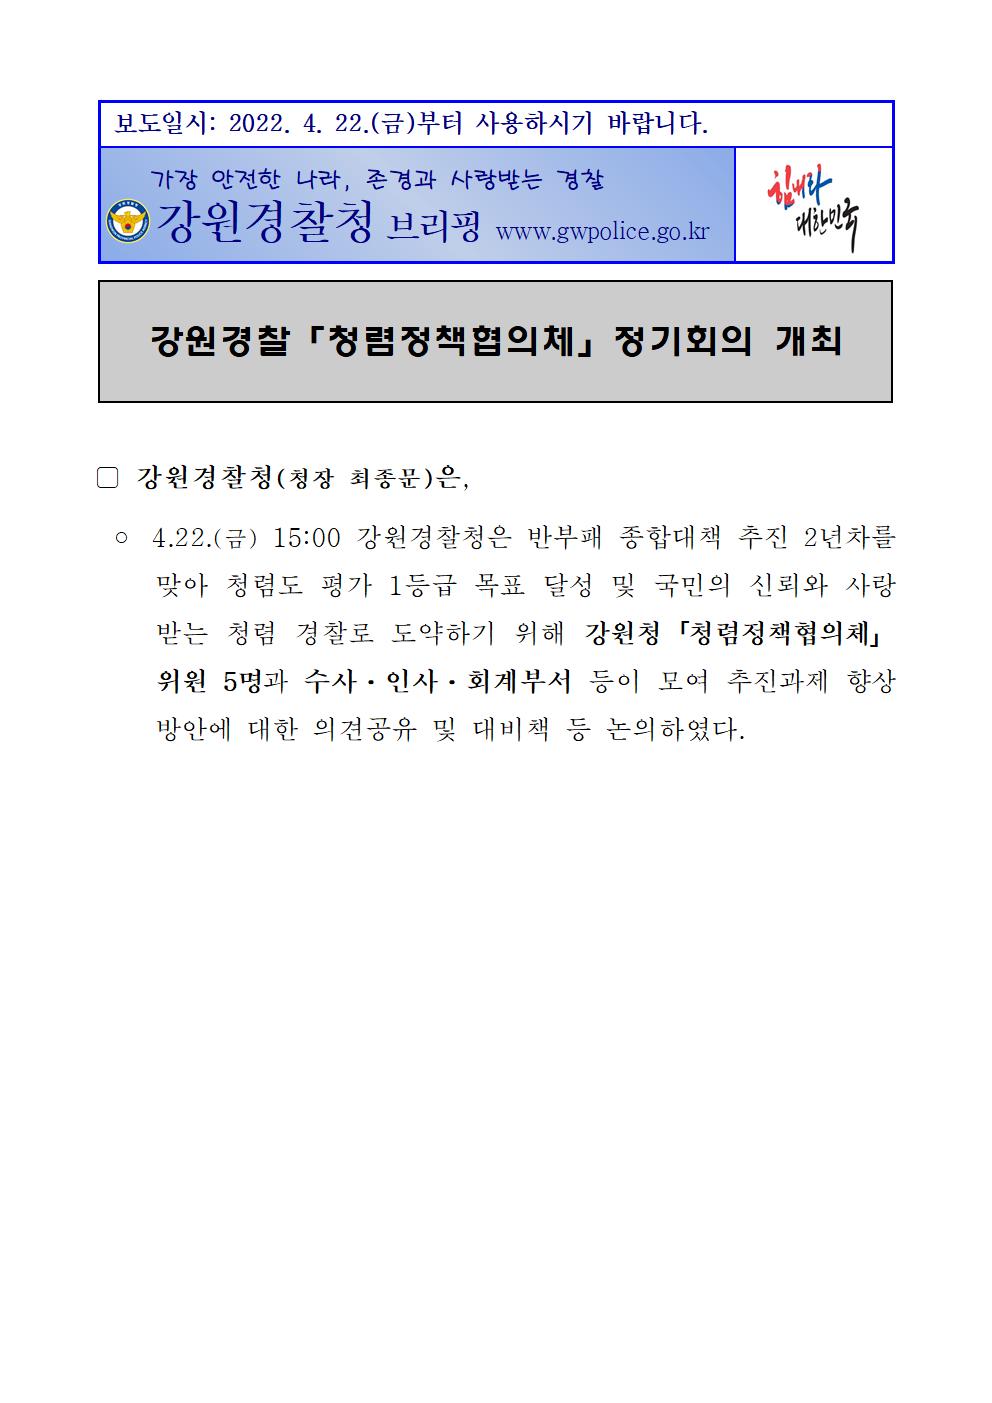 강원경찰, 청렴정책협의체 정기회의 개최-강원경찰, 청렴정책협의체 정기회의 개최